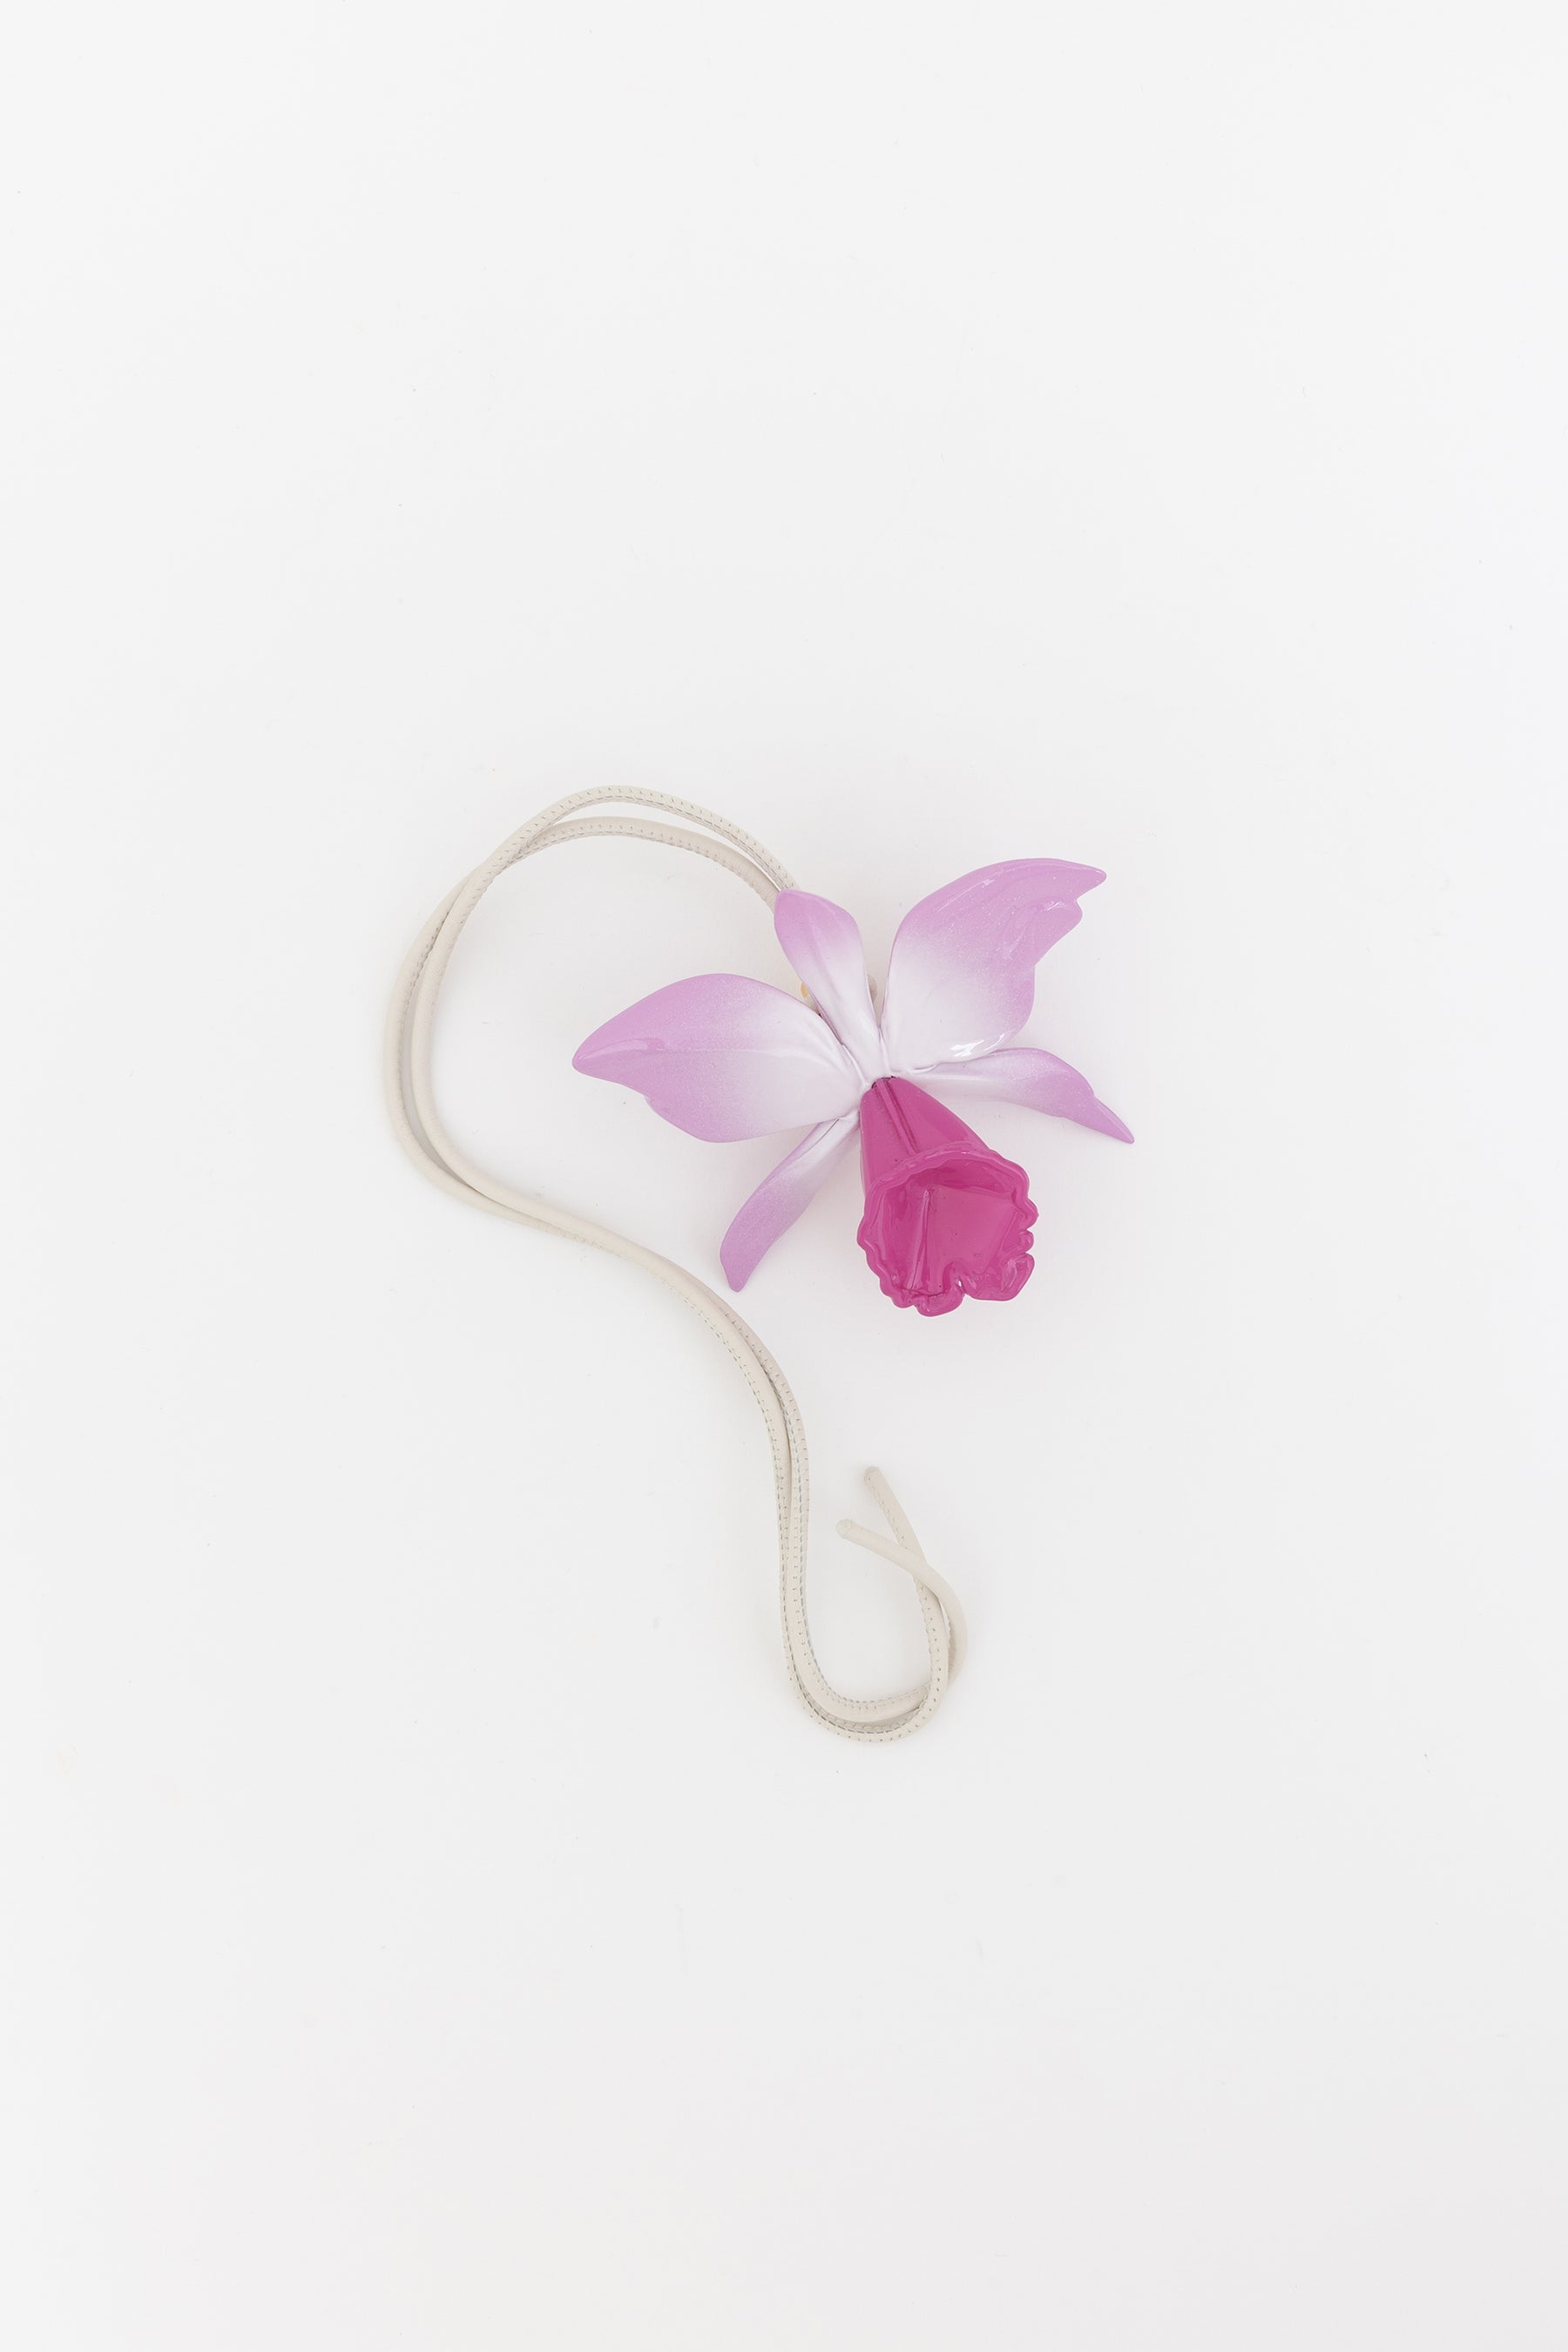 Maruja Mallo Orchid Charm